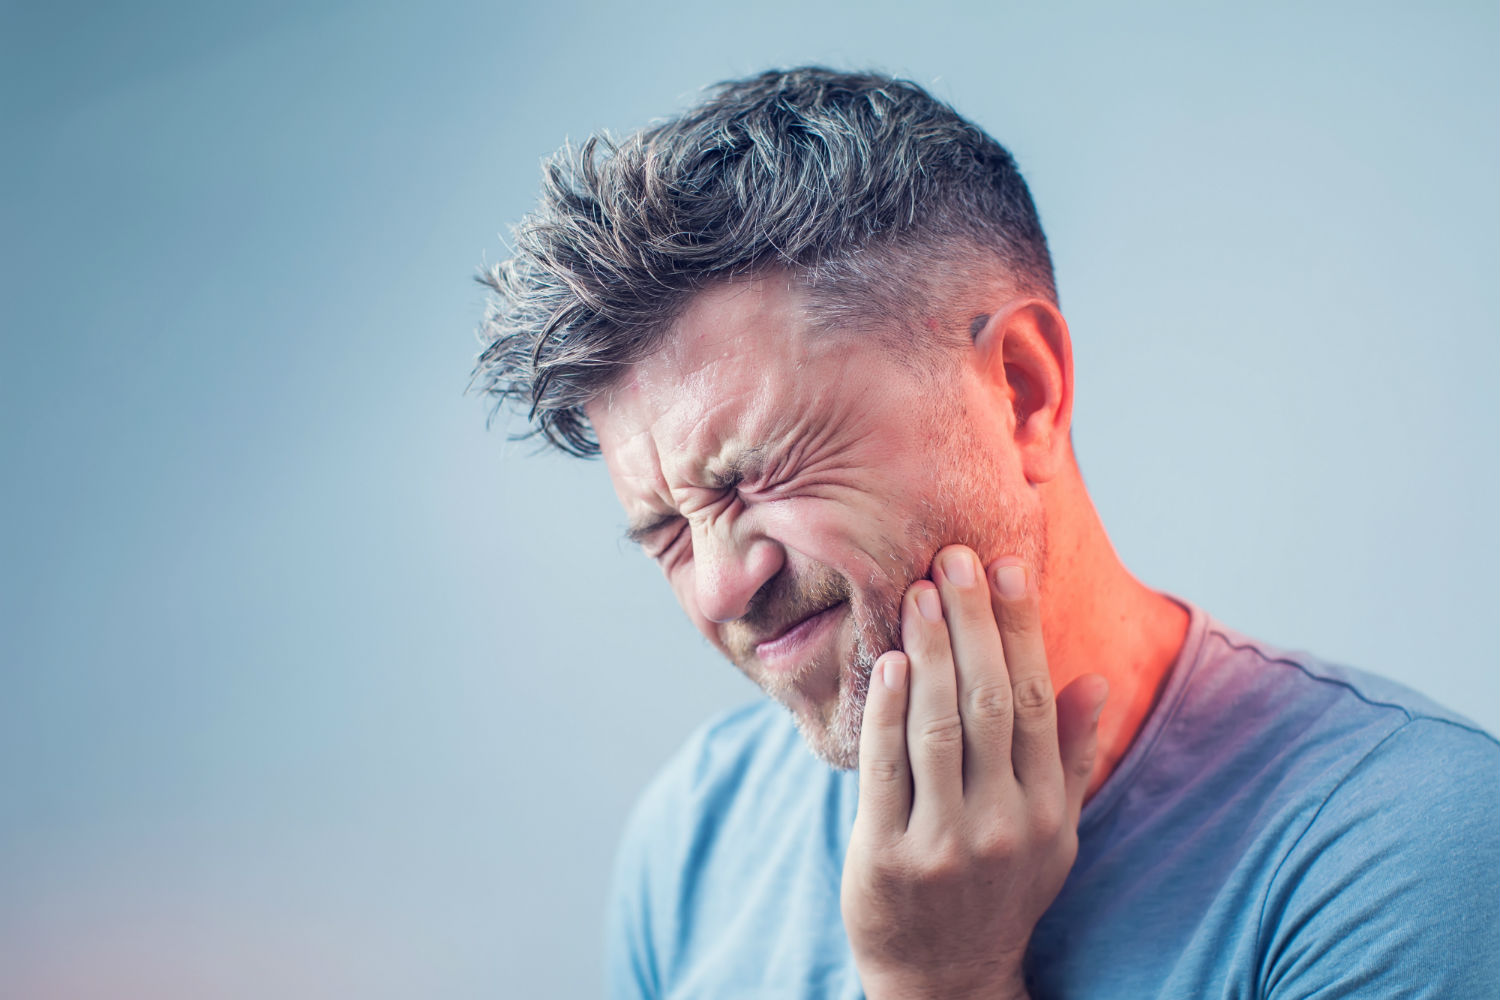  علاج ألم الأسنان الشديد في المنزل